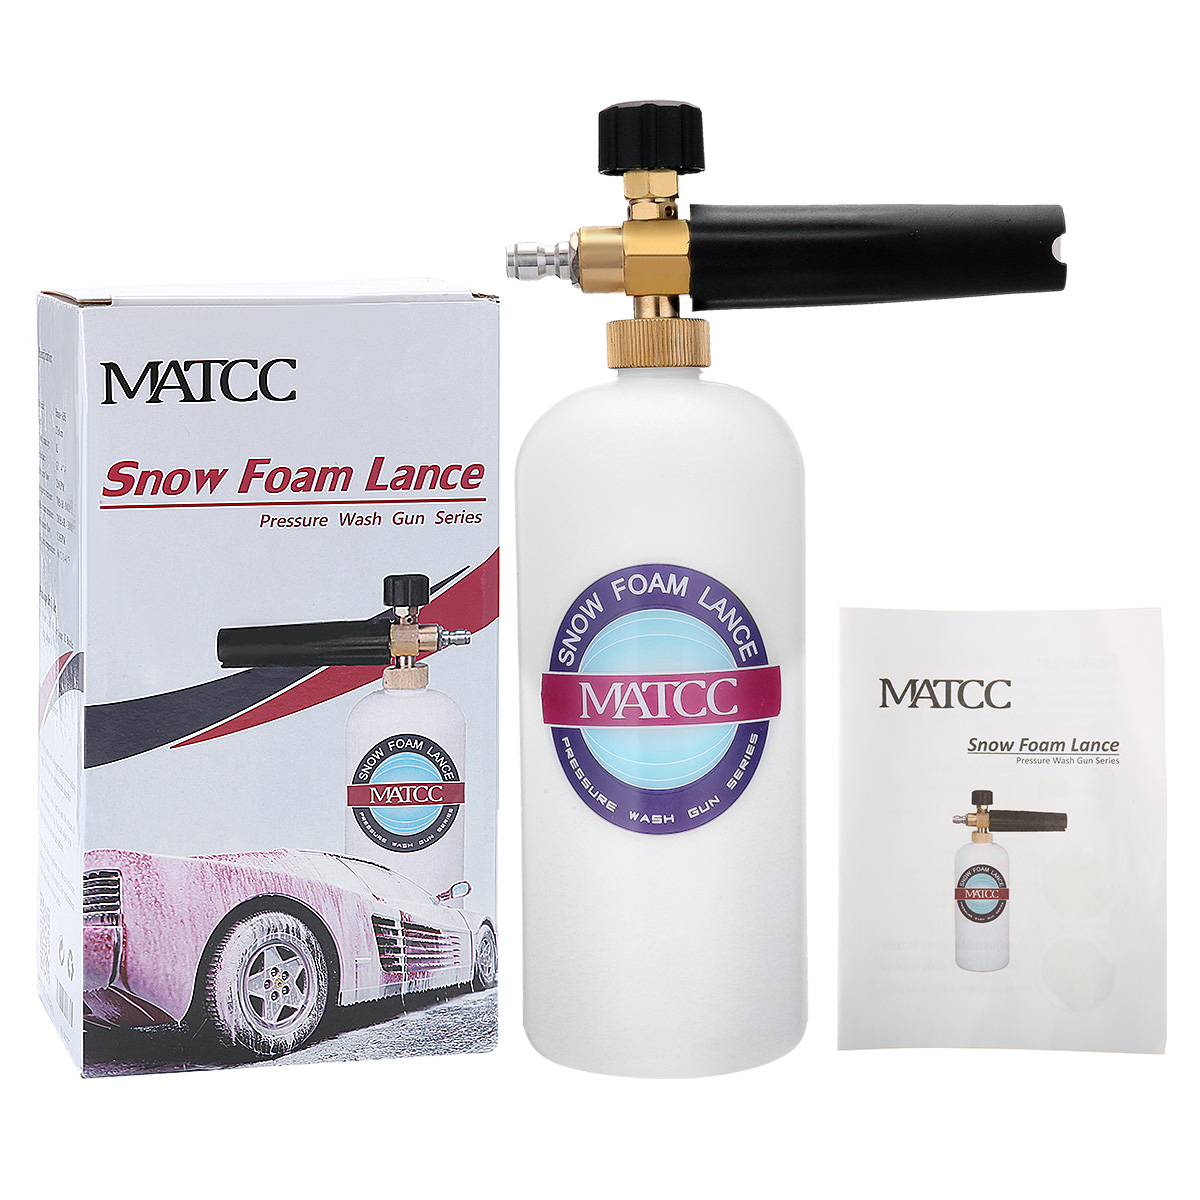 MATCC Adjustable Snow Foam Lance Washer Soap 1L Bottle Car Wash 1/4 Inch Inlet